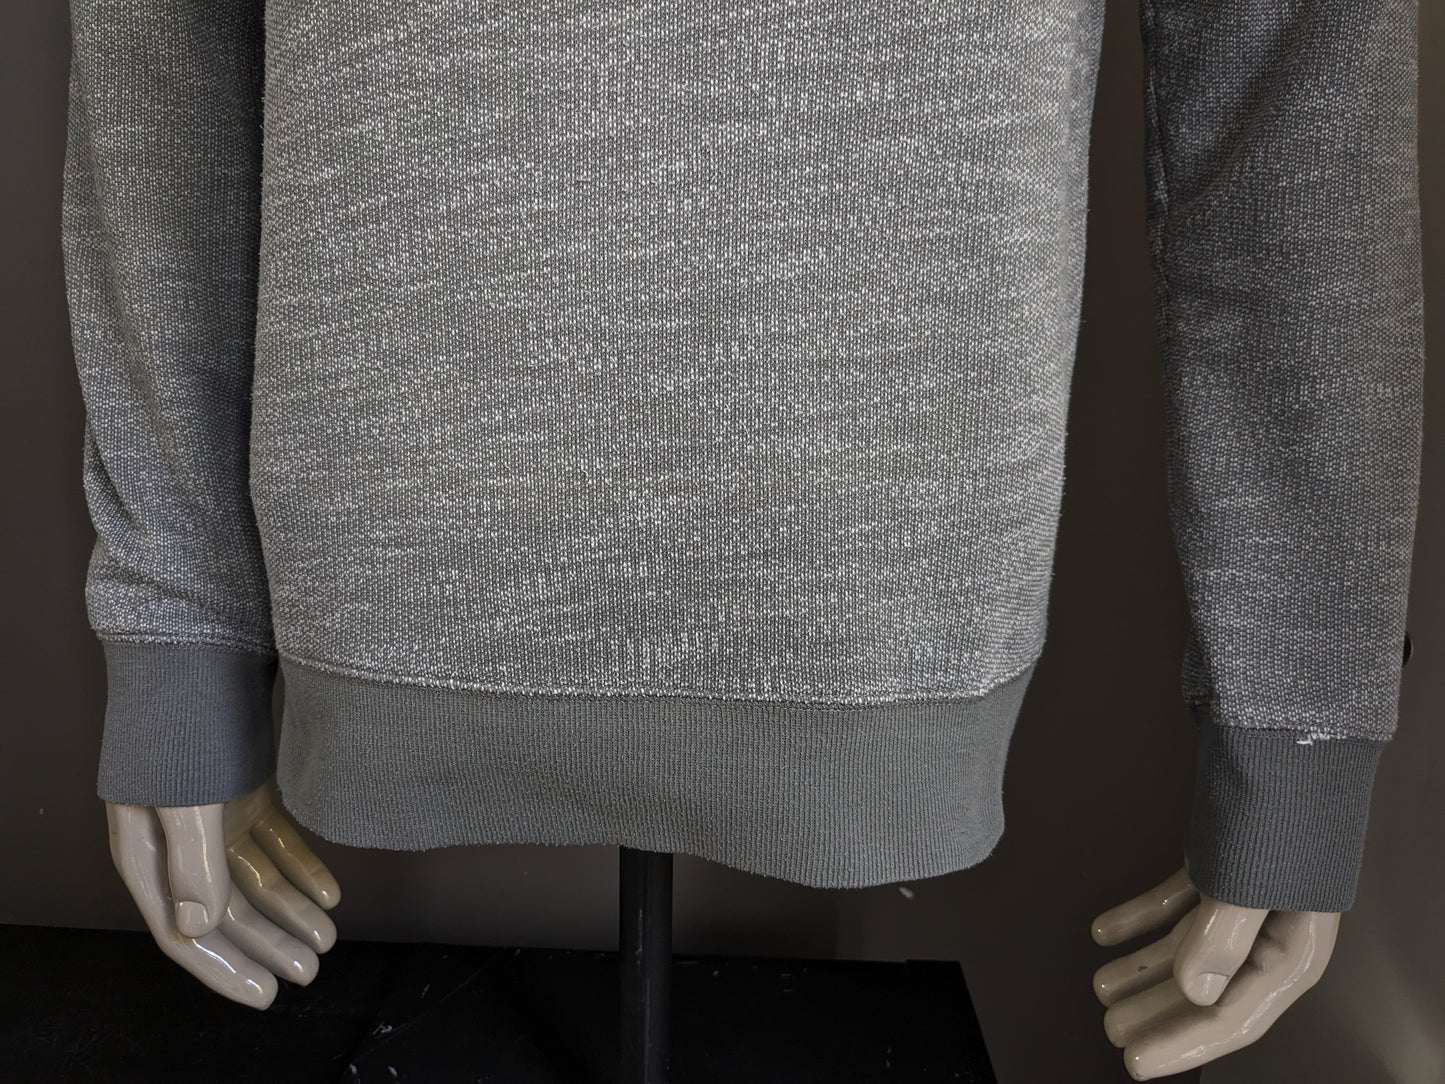 Esprit -Pullover mit sportlichem Rollkragenpullover. Grau weiß gemischt. Größe L.